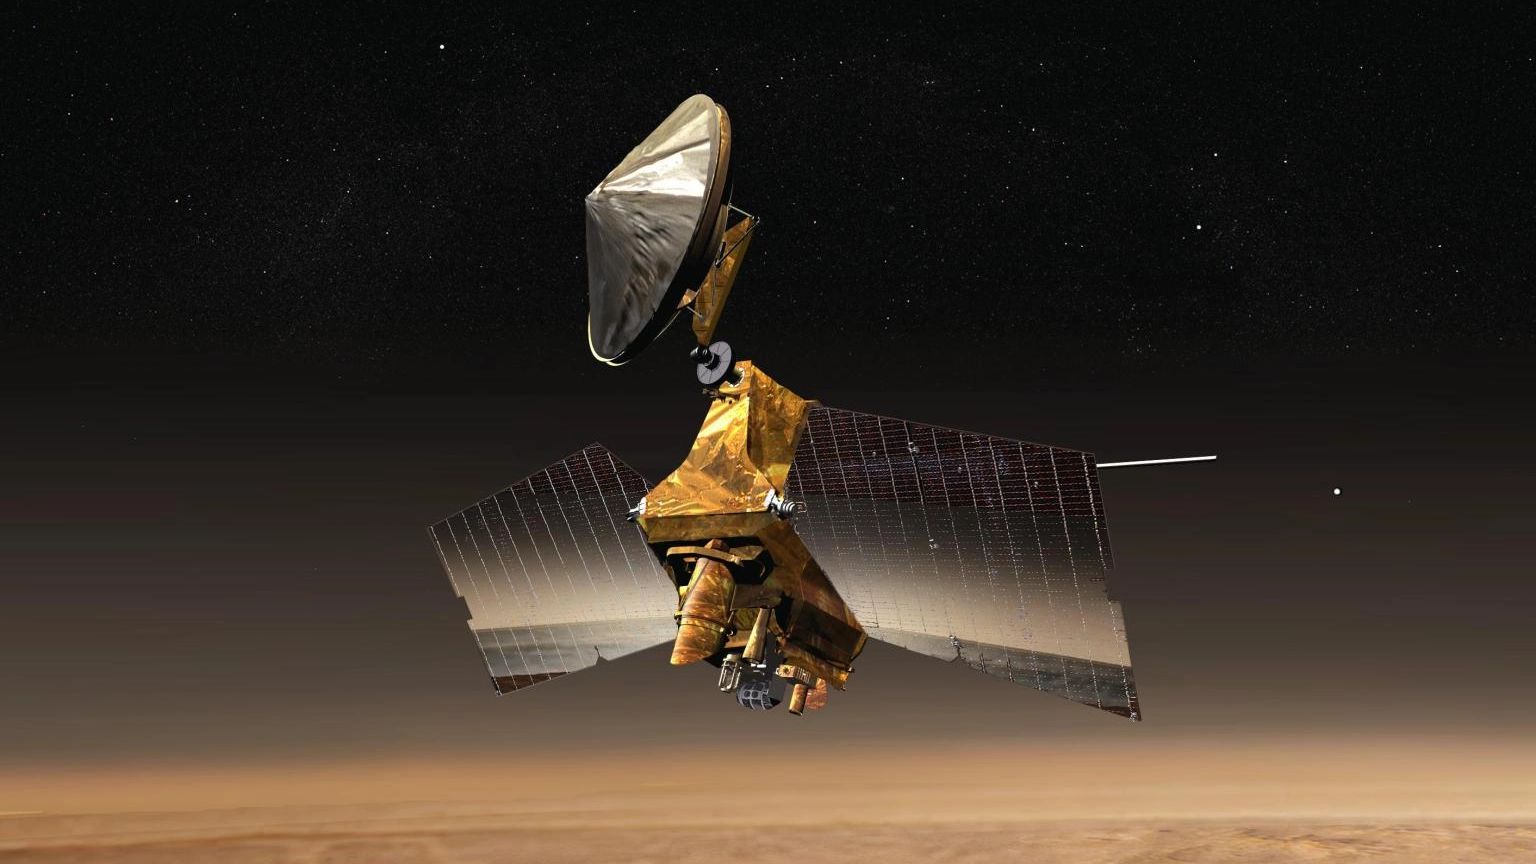 Una immagine della Nasa della sonda Mars Reconnaissance Orbiter